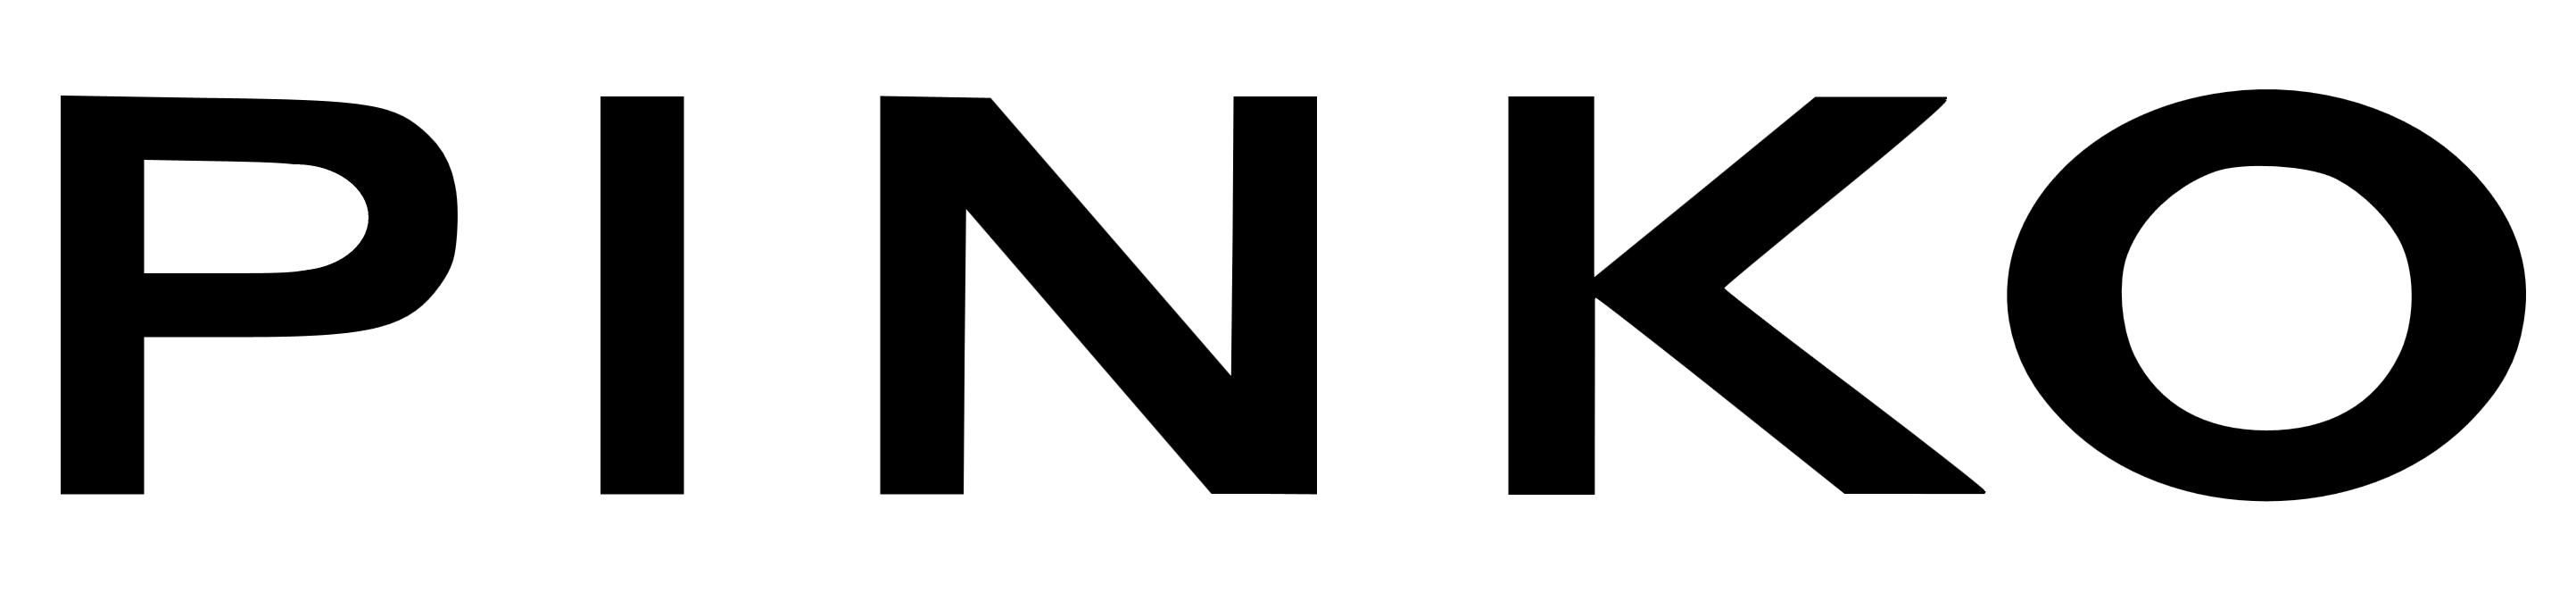 Pinko logo, logotype